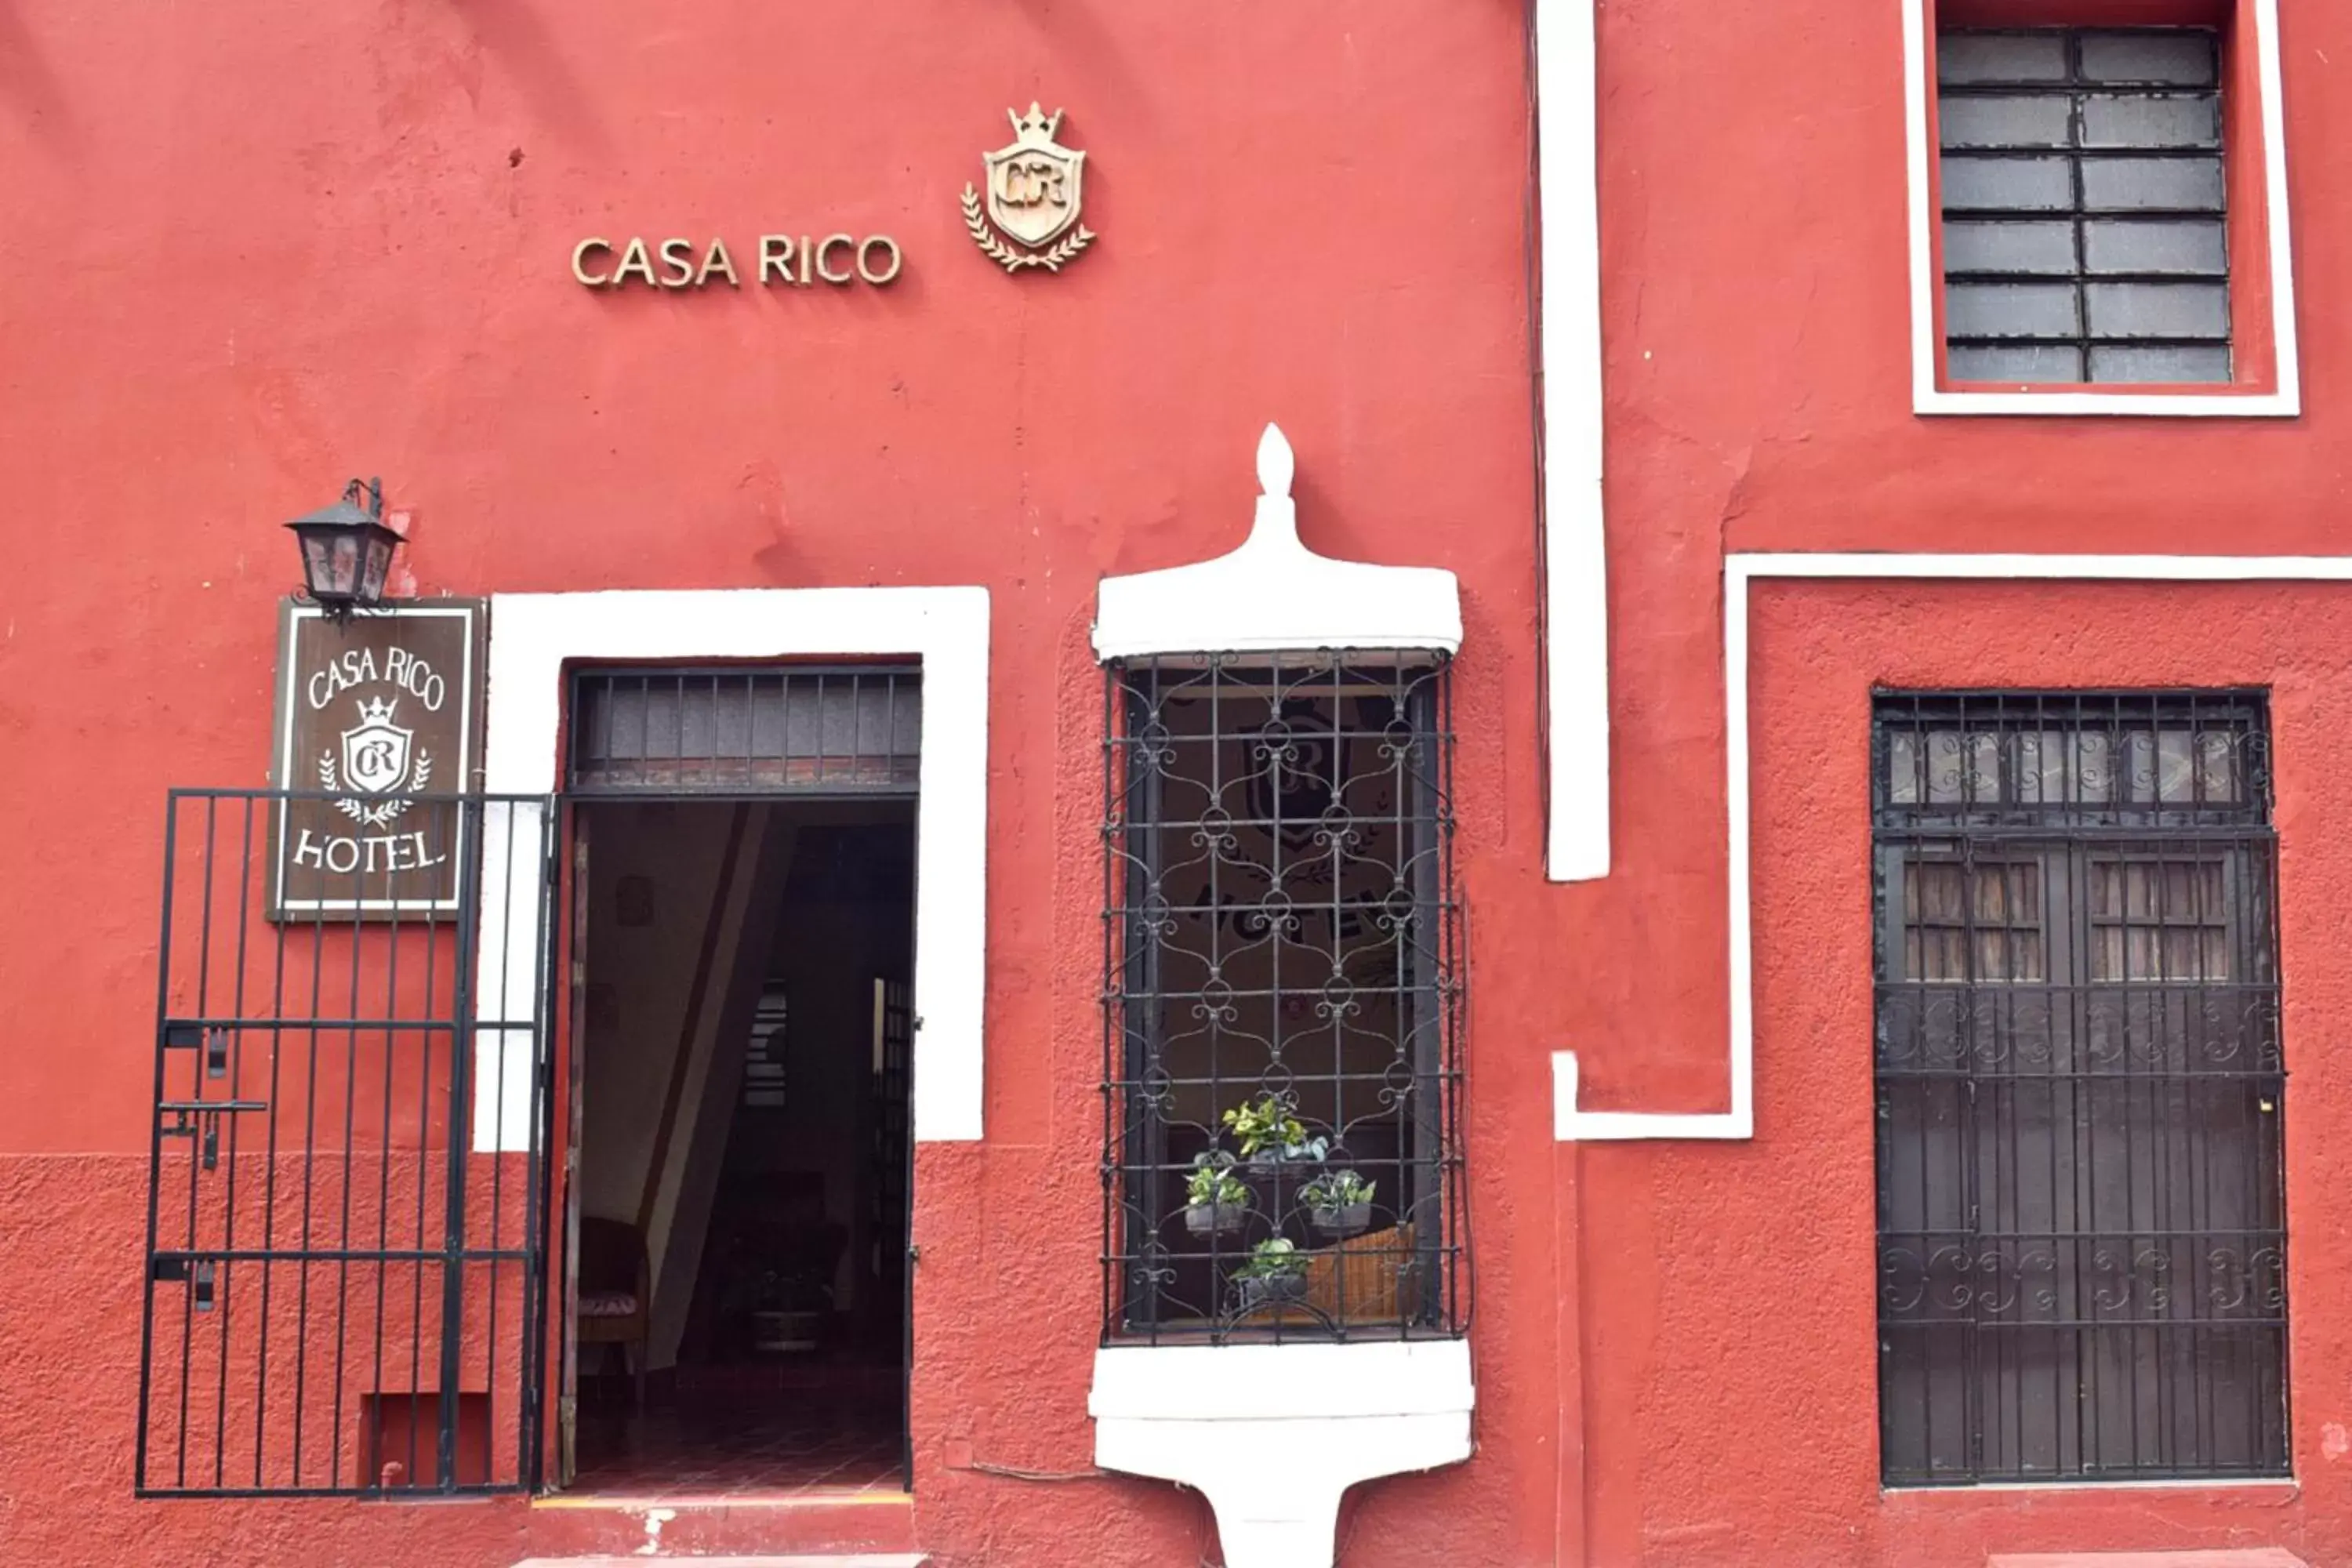 Facade/entrance in Hotel Casa Rico